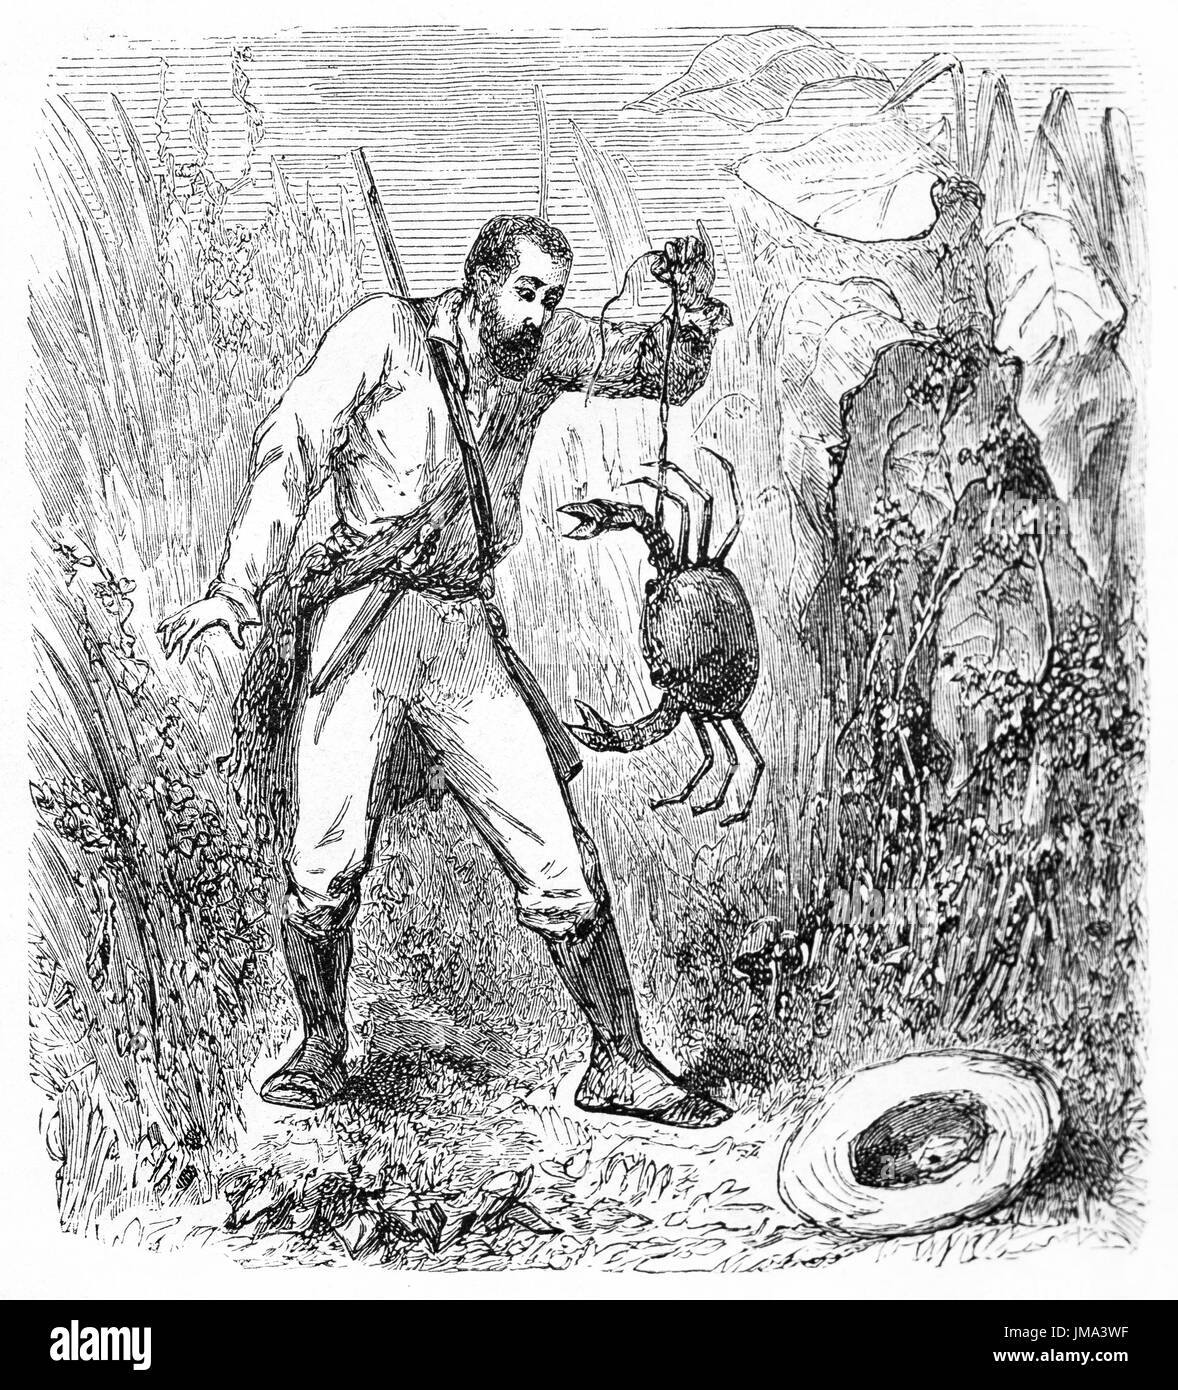 Un explorateur stupéfait dans la forêt tropicale brésilienne tenant un gros crabe à l'aide d'une ficelle. Art de style gravure de tons gris anciens par Riou et laly, le Tour du monde,1861 Banque D'Images